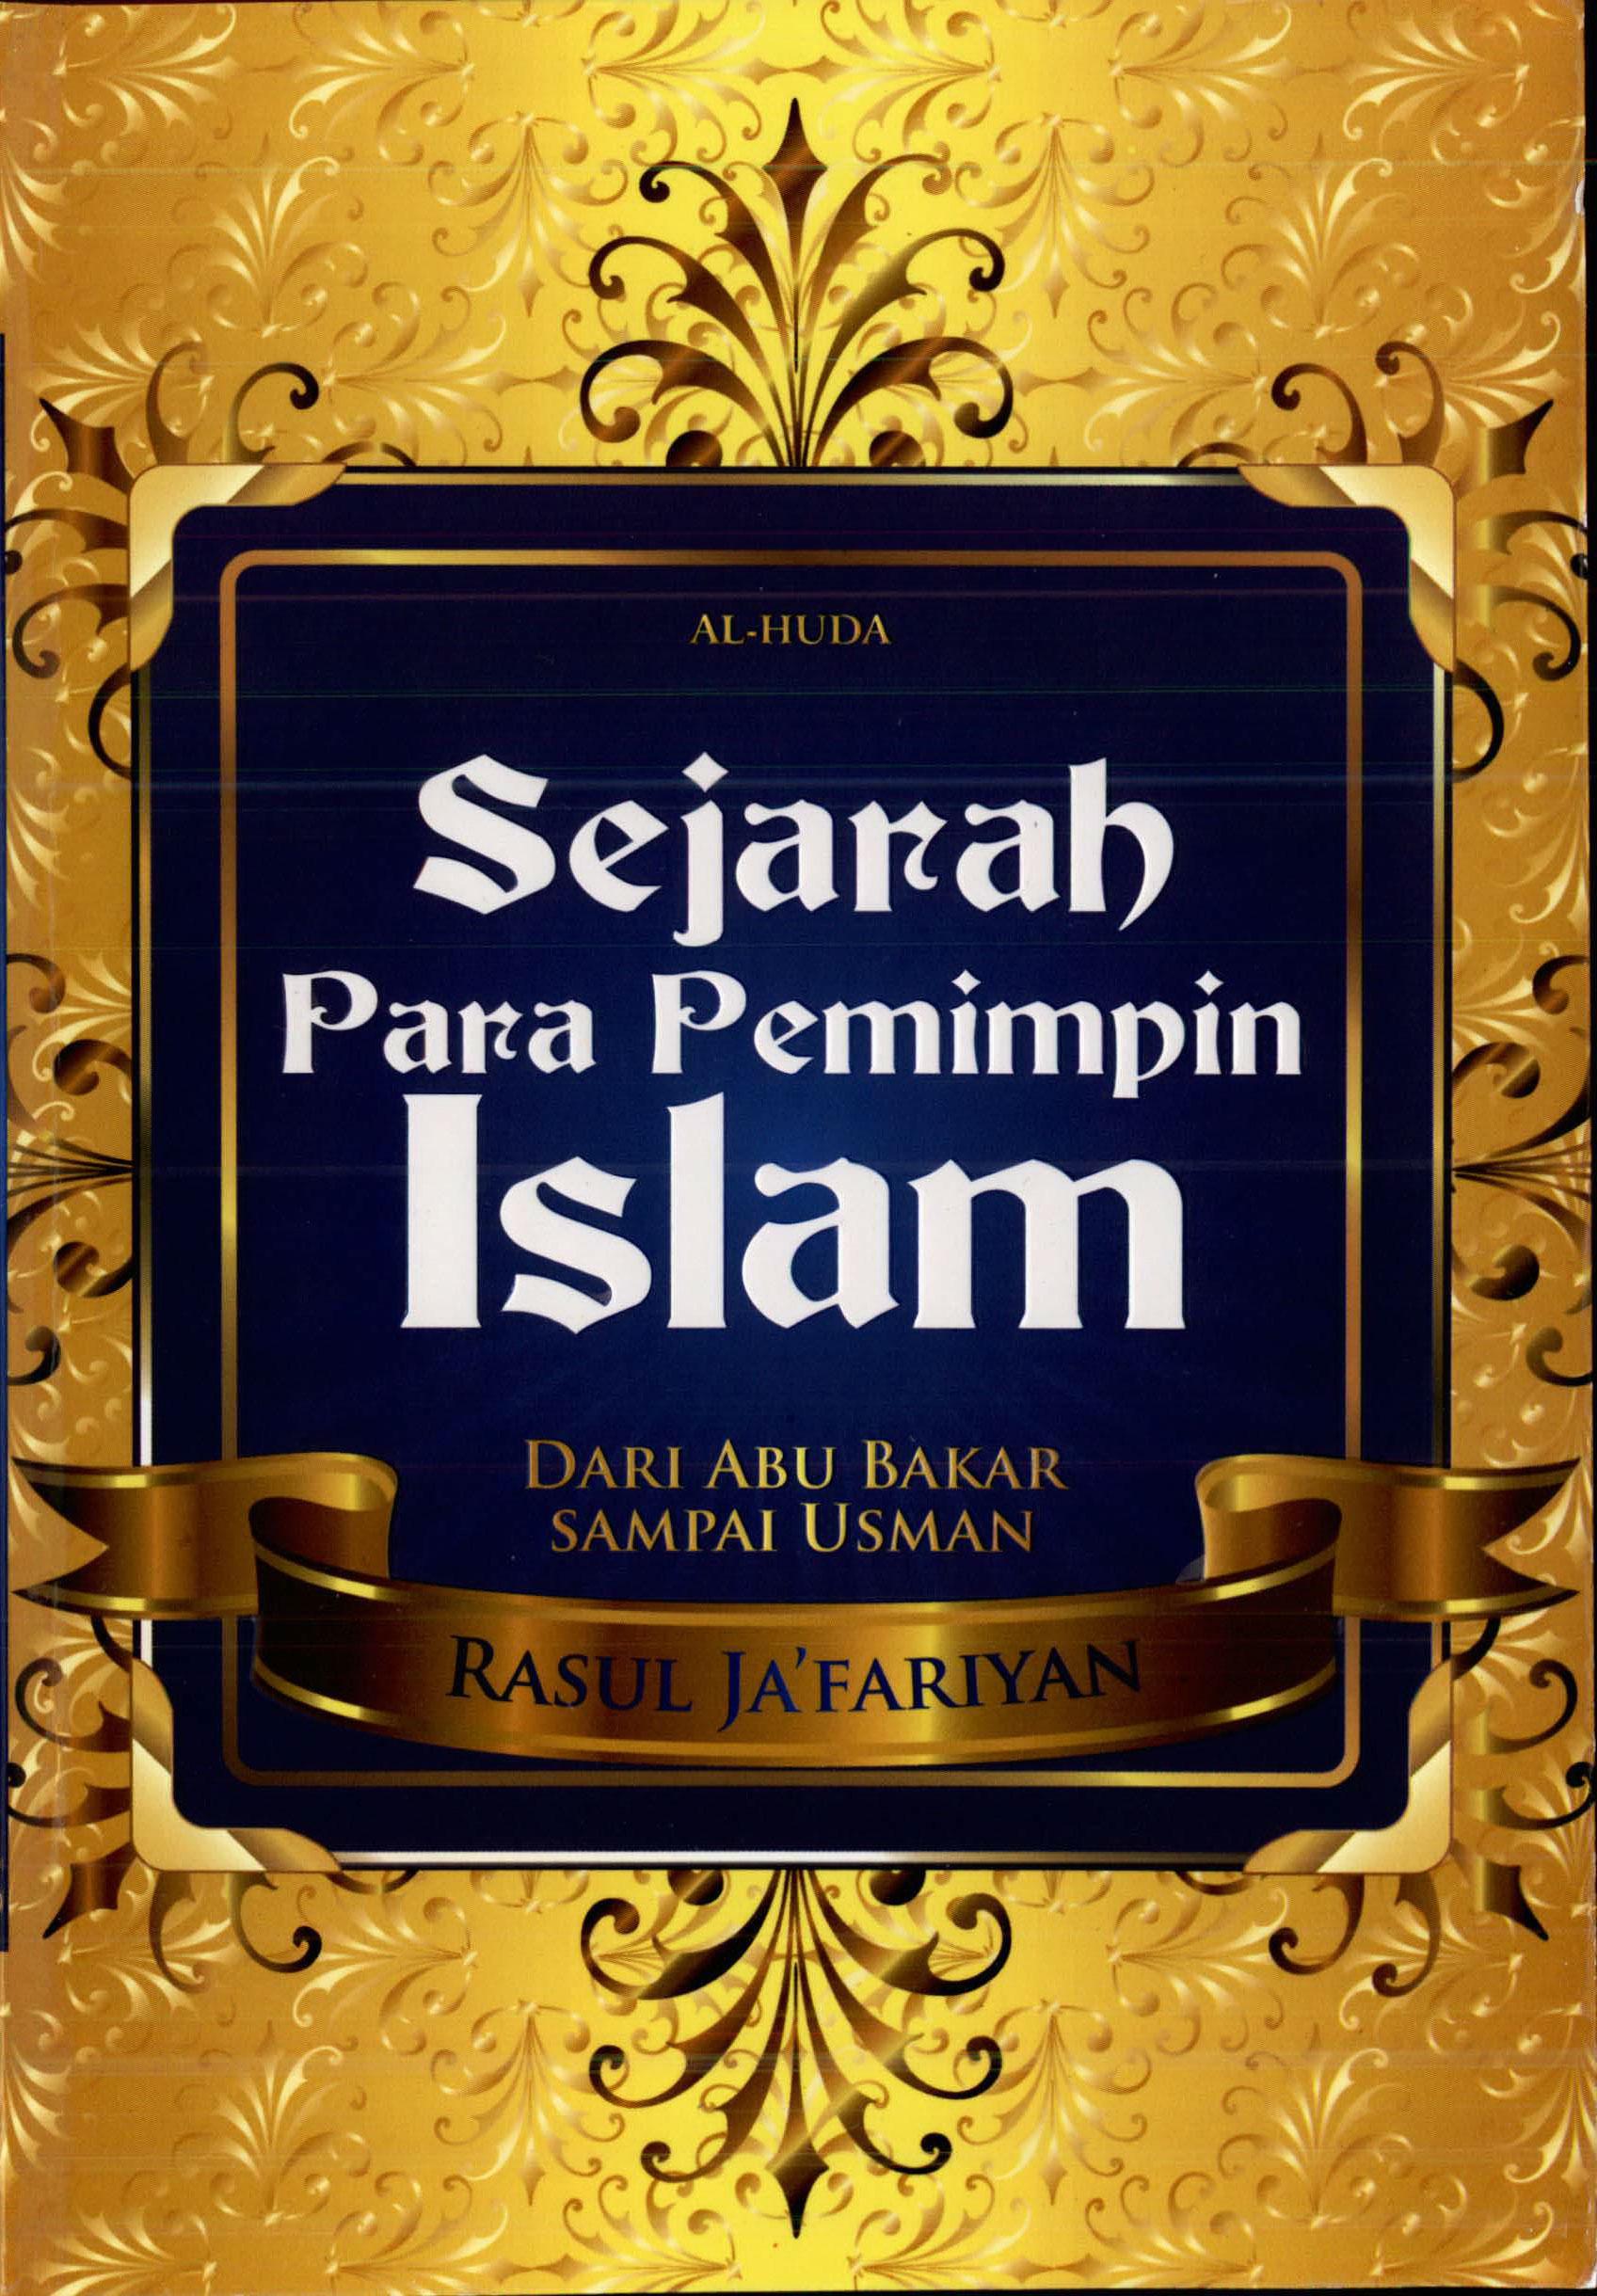 Sejarah Para Pemimpin Islam Dari Abu Bakar Sampai Usman (Buku pertama)